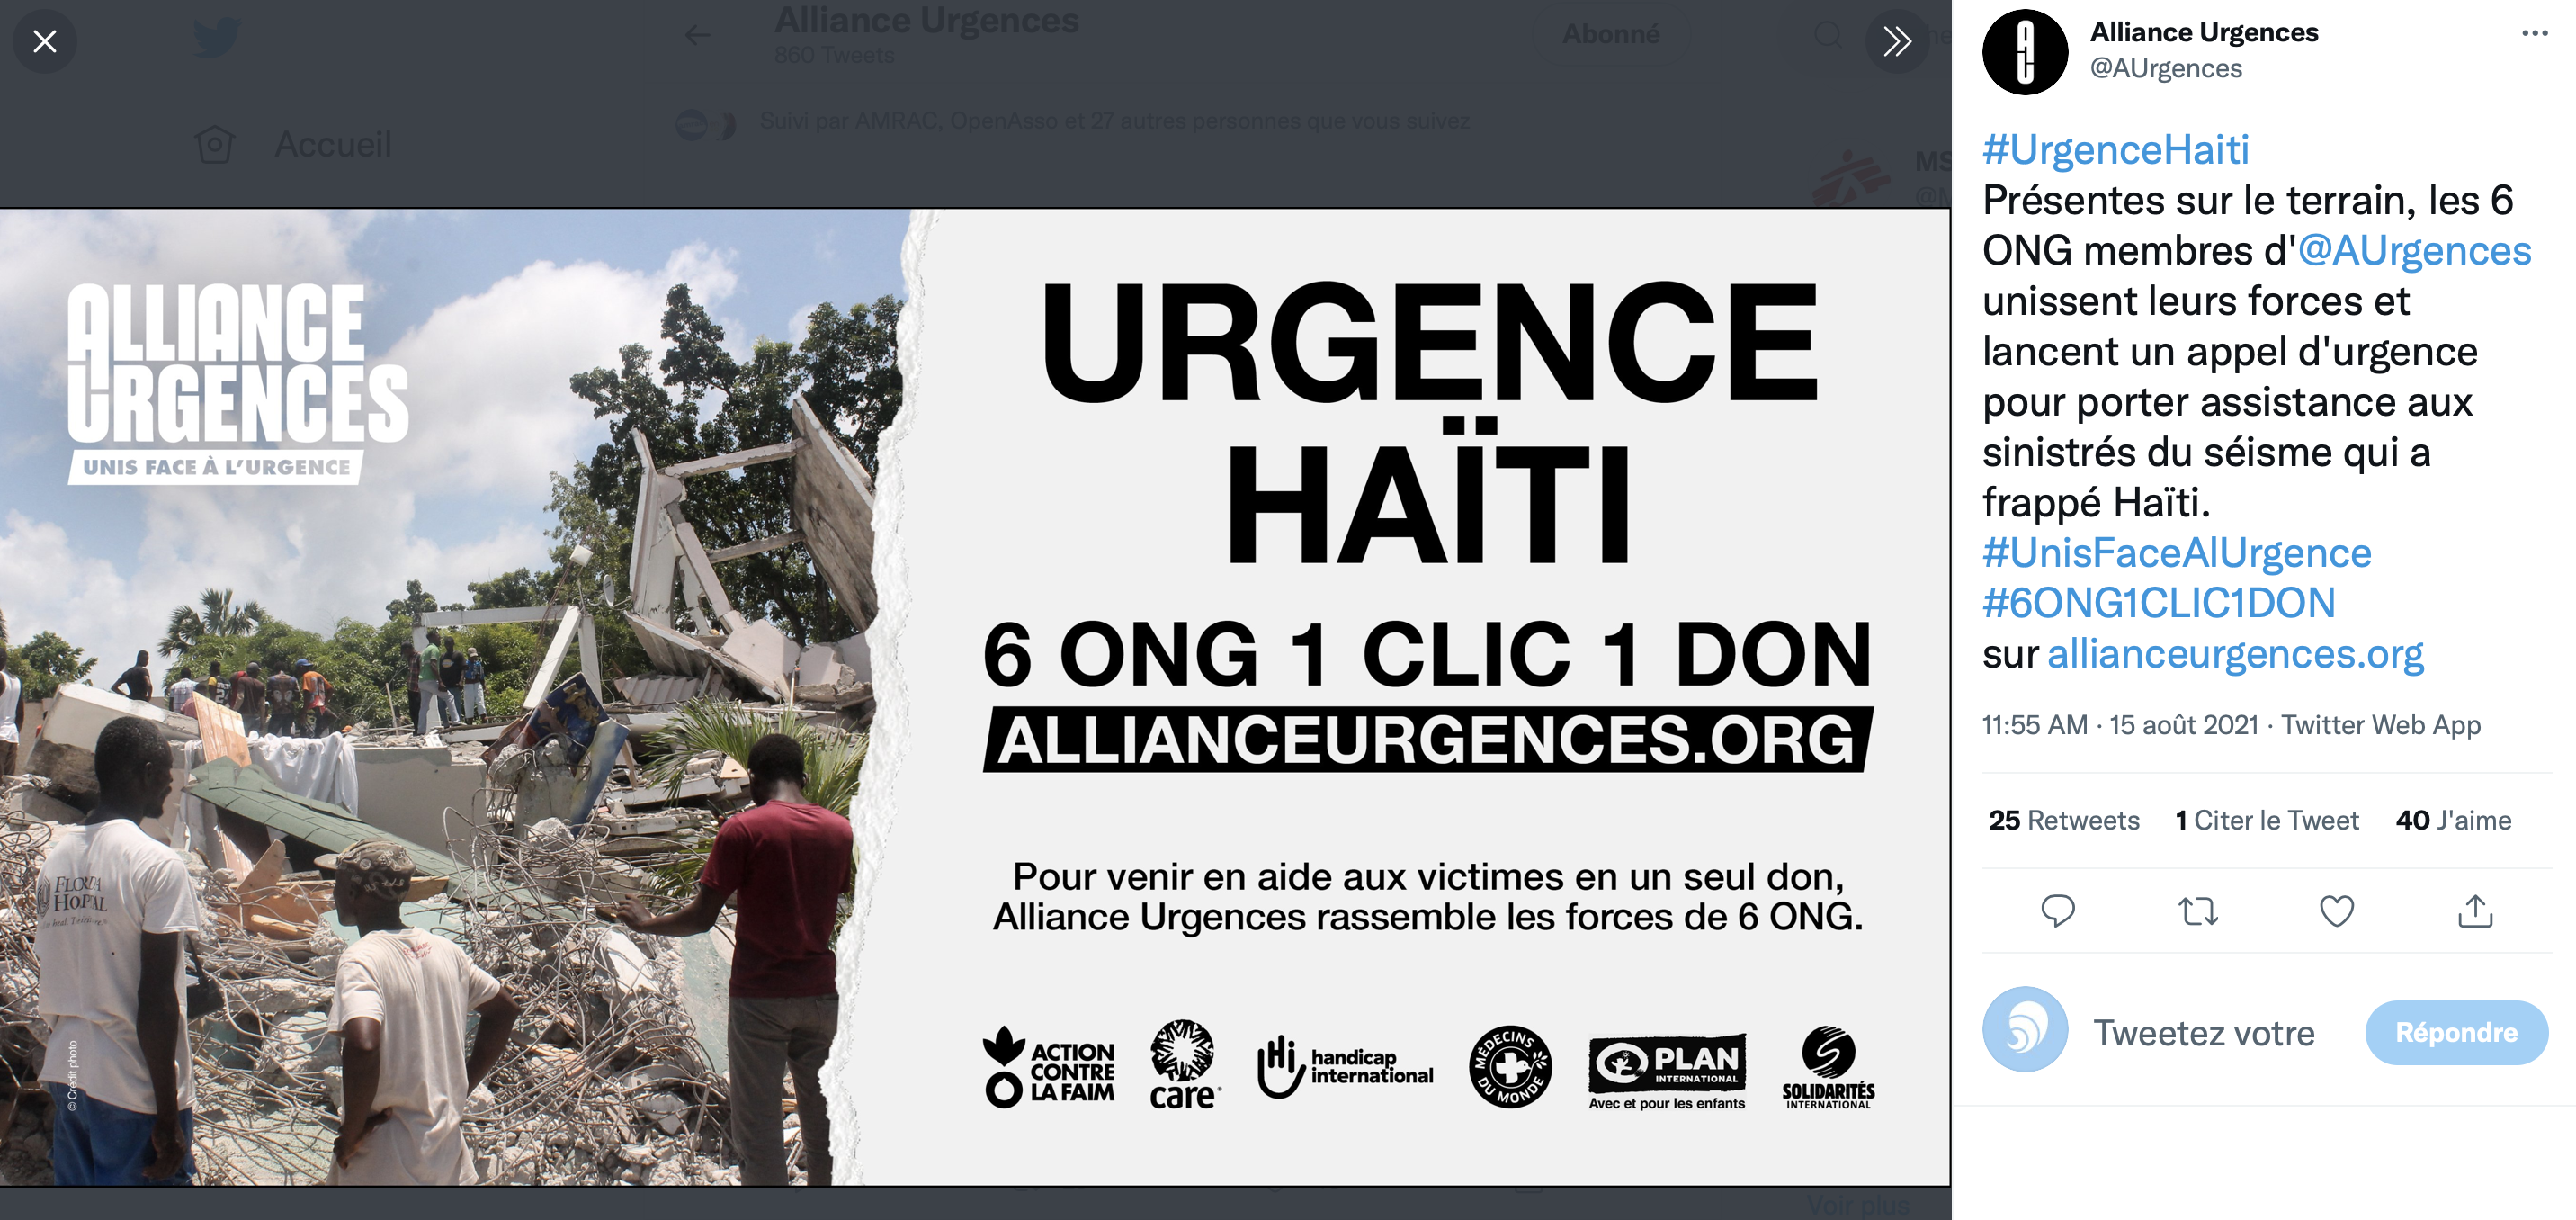 Copie d'écran : compte intagram Alliance Urgences 